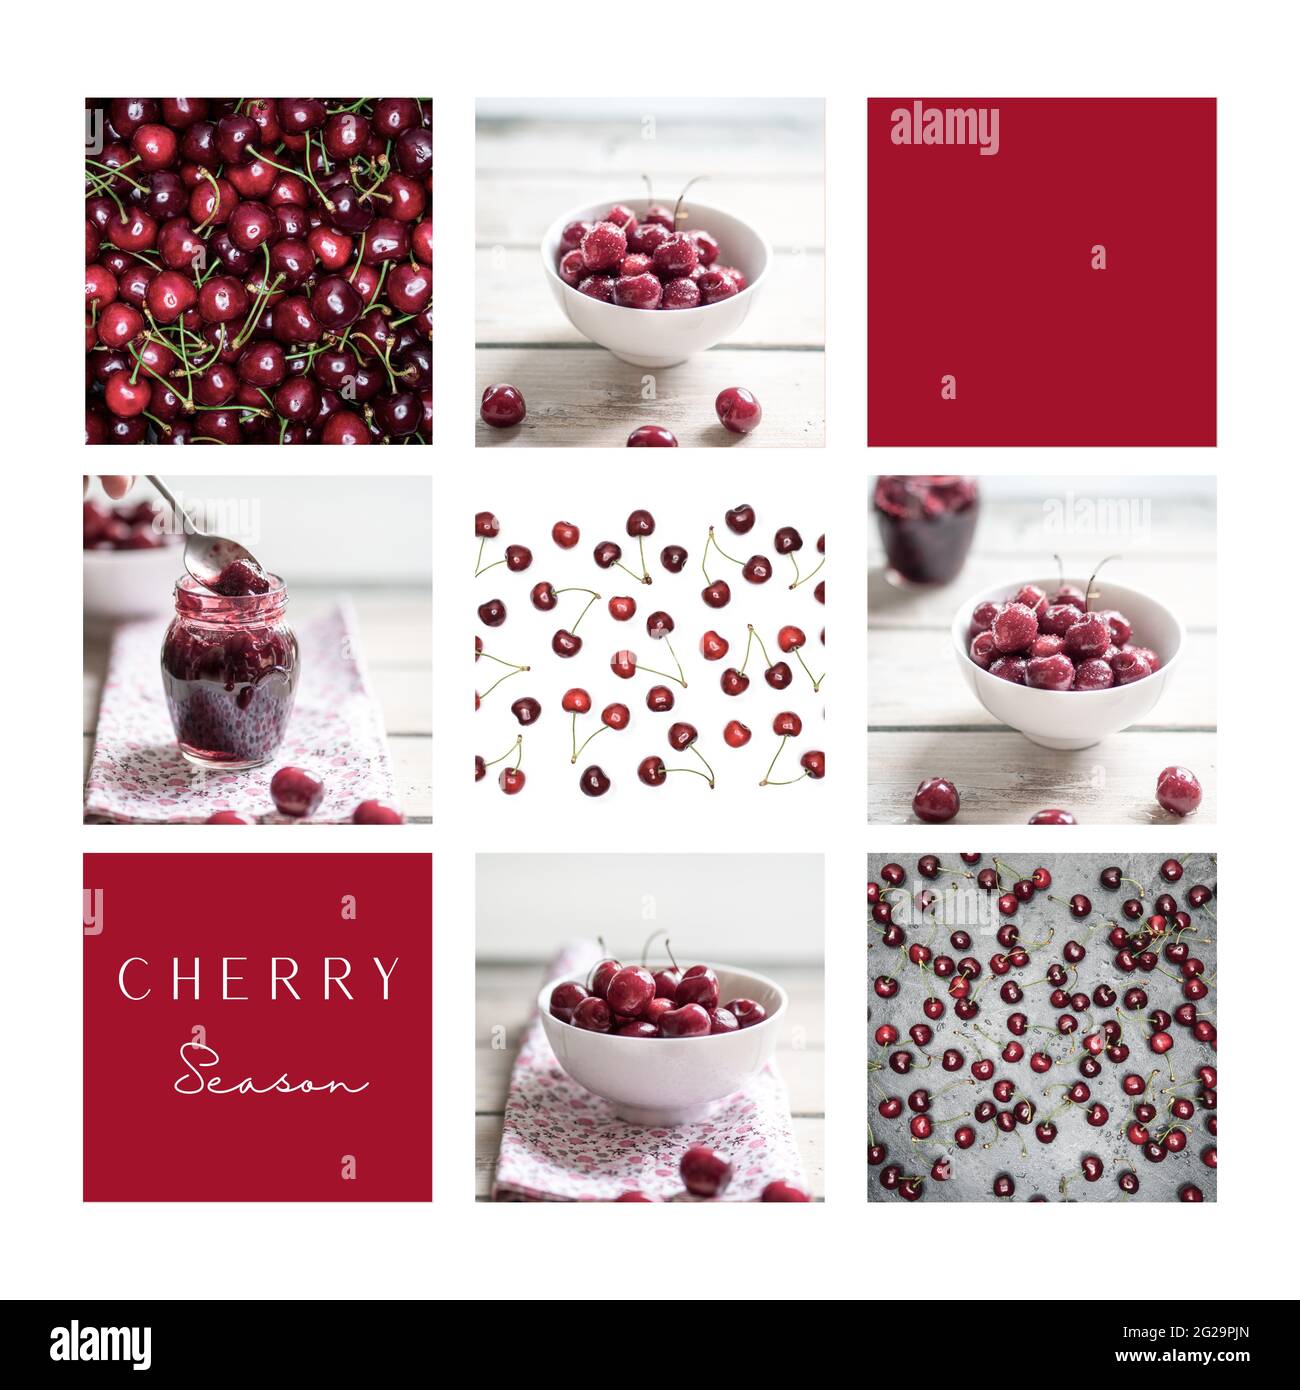 Stagione delle ciliegie. Collage di immagini con ciliegie fresche raccolte in prua bianca e confettura di ciliegie. Post sui social media, mood board. Foto Stock